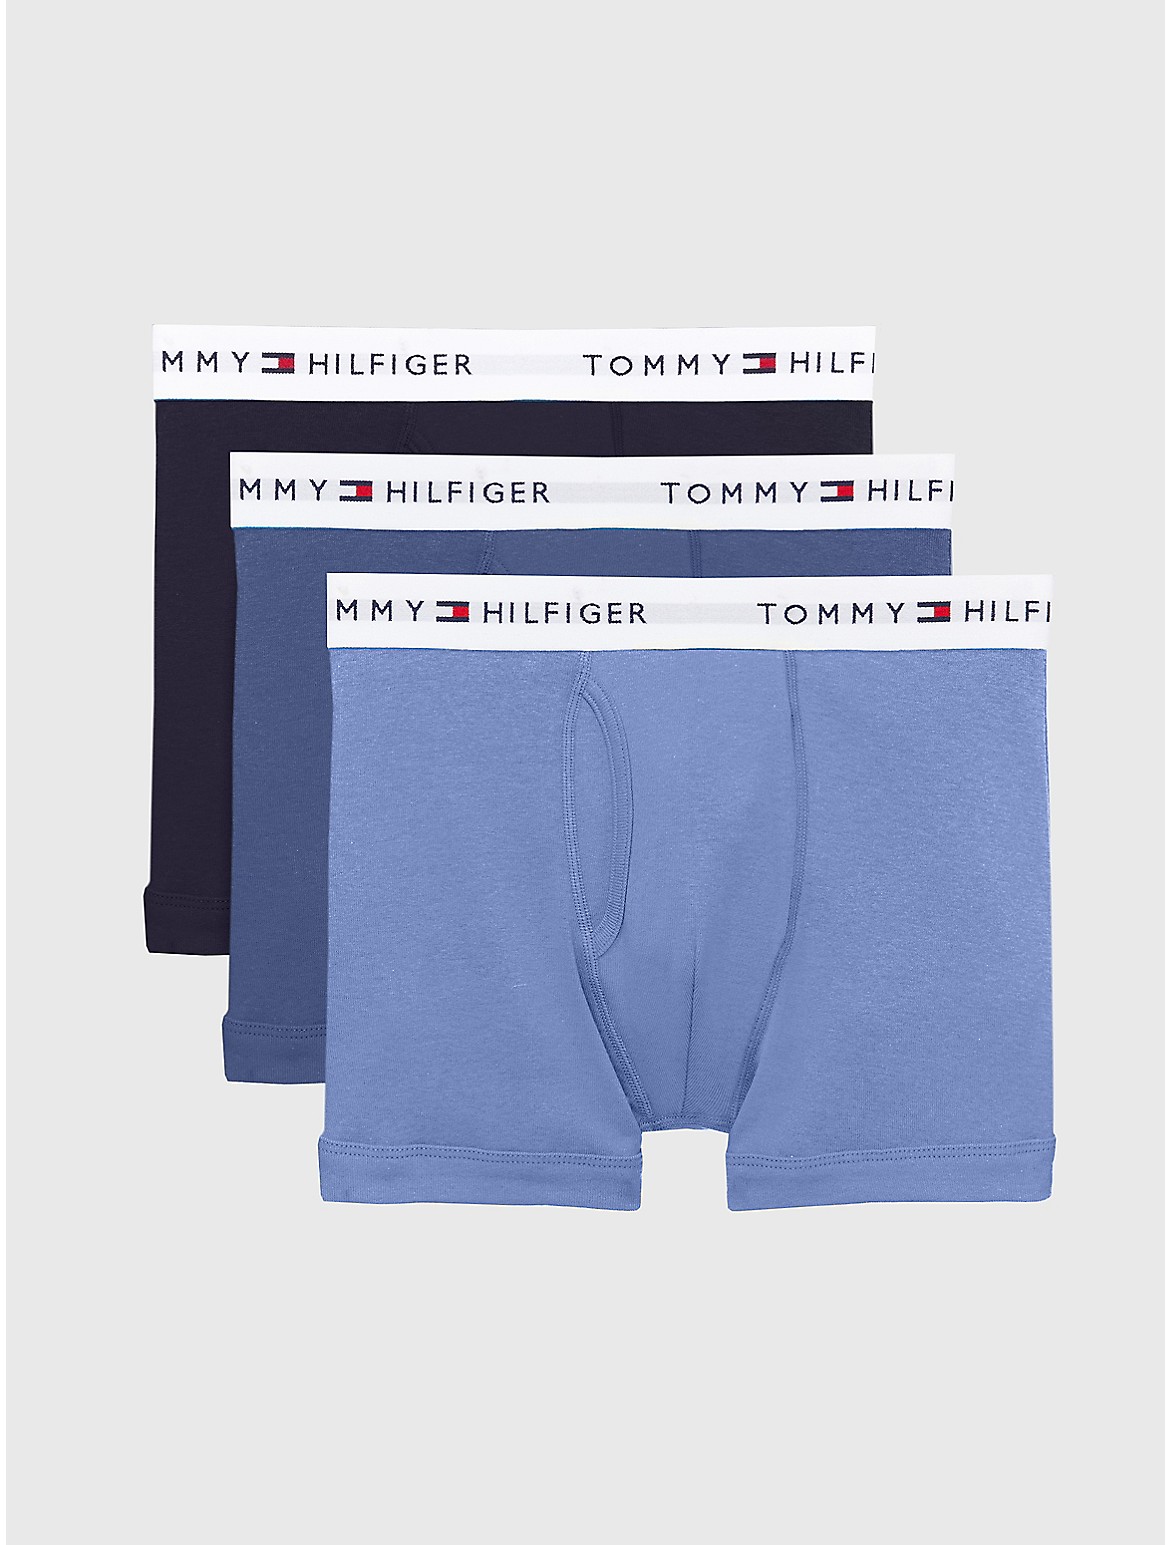 Tommy Hilfiger Men's Cotton Classics Trunk 3-Pack - Light/Pastel Blue - S